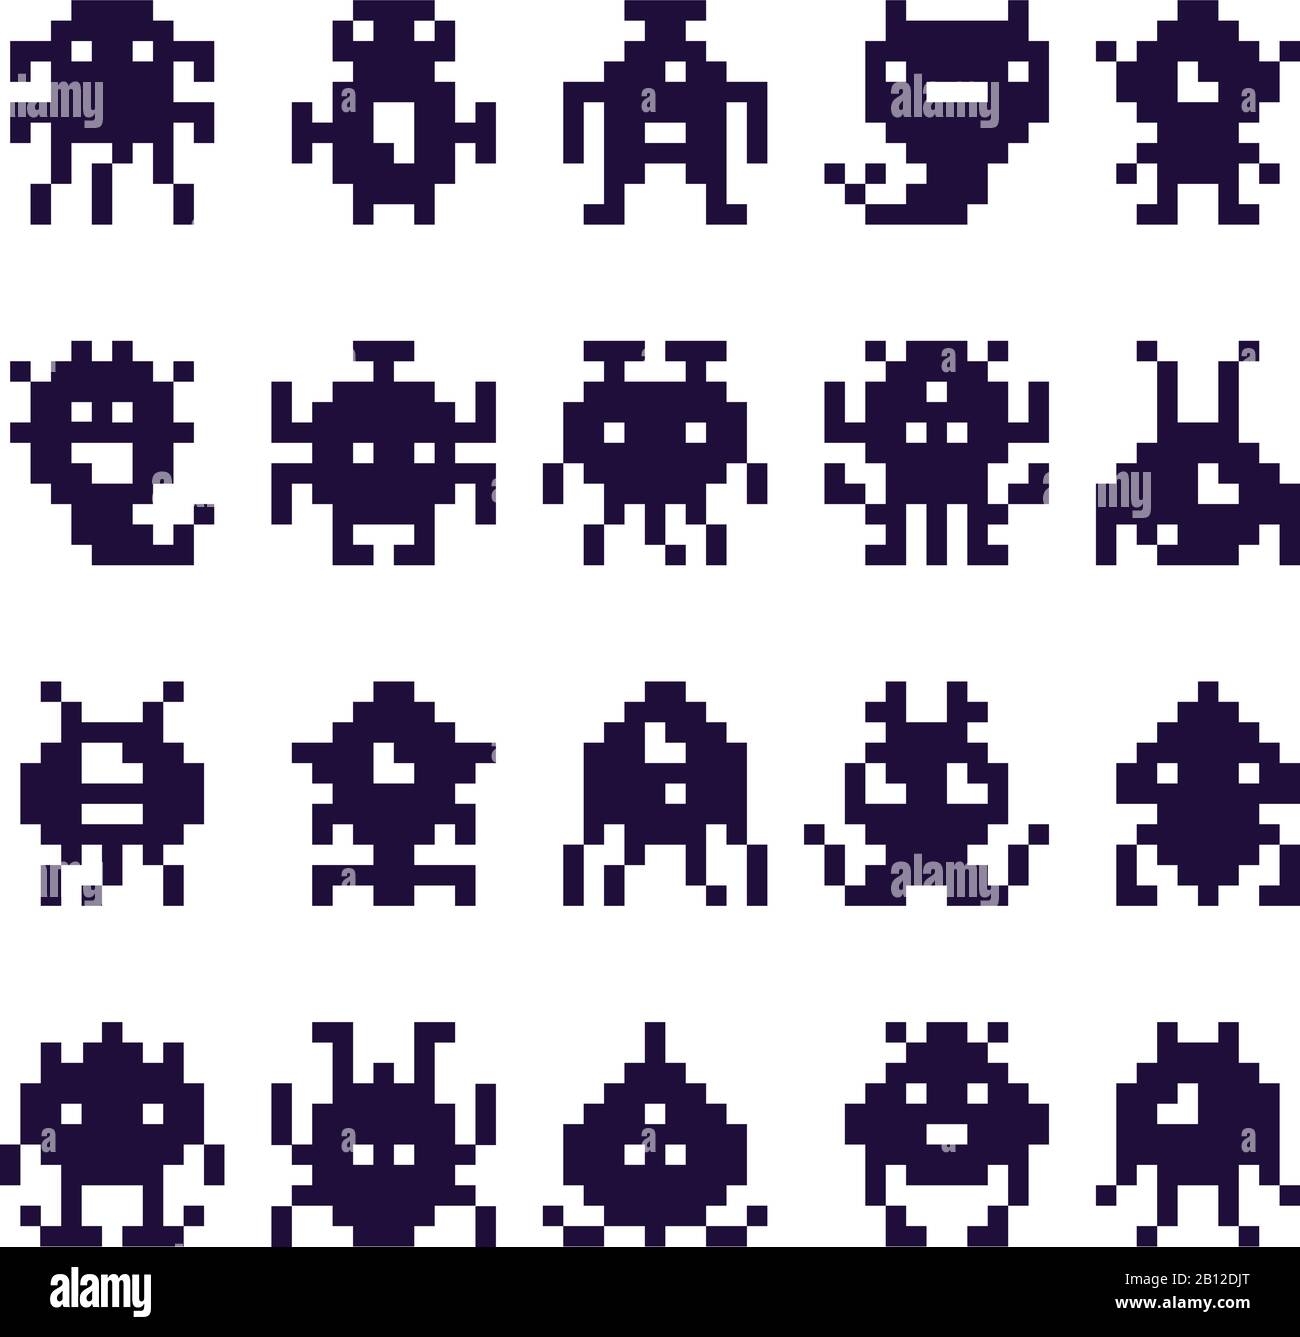 Pixel Art Invasoren Silhouette. Space Invader Monsterspiel, Pixelroboter und Retro Arcade-Spiele isolierte Vektorsymbole gesetzt Stock Vektor